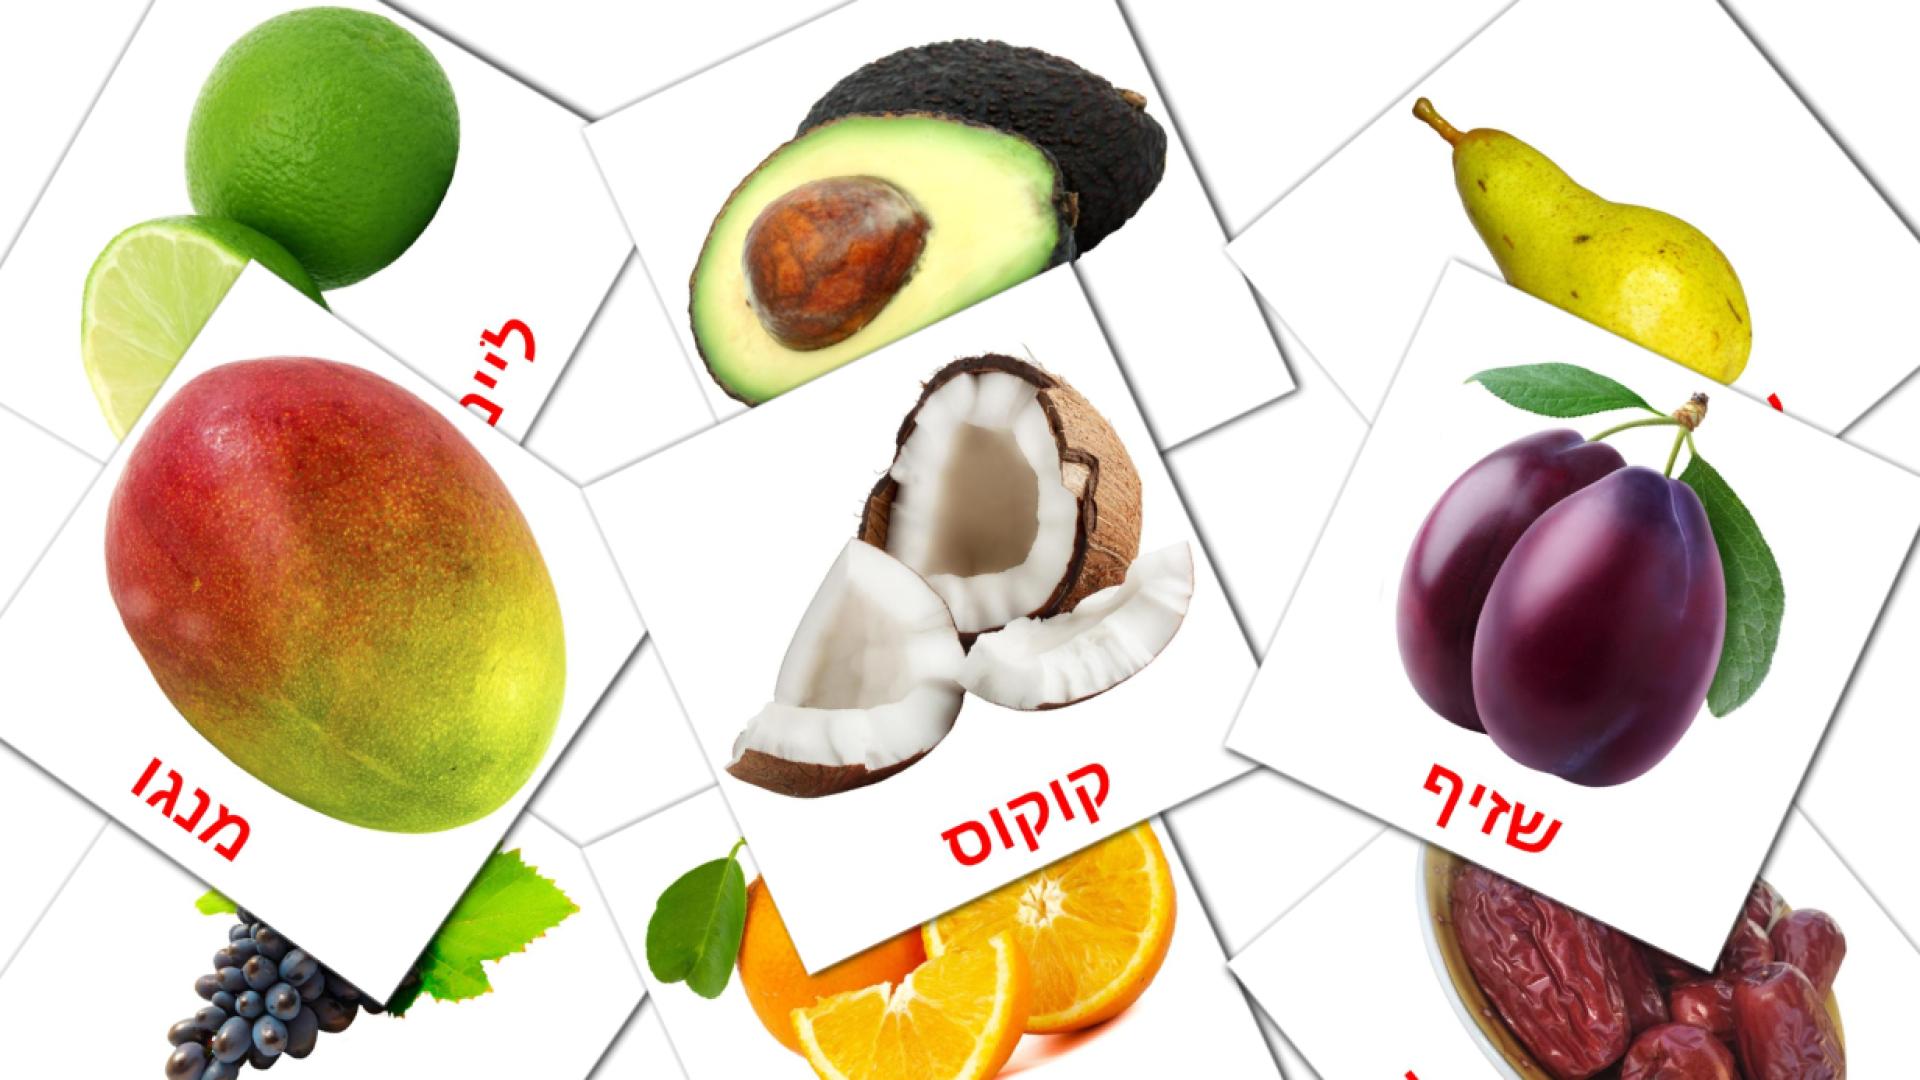 Bildkarten für פירות